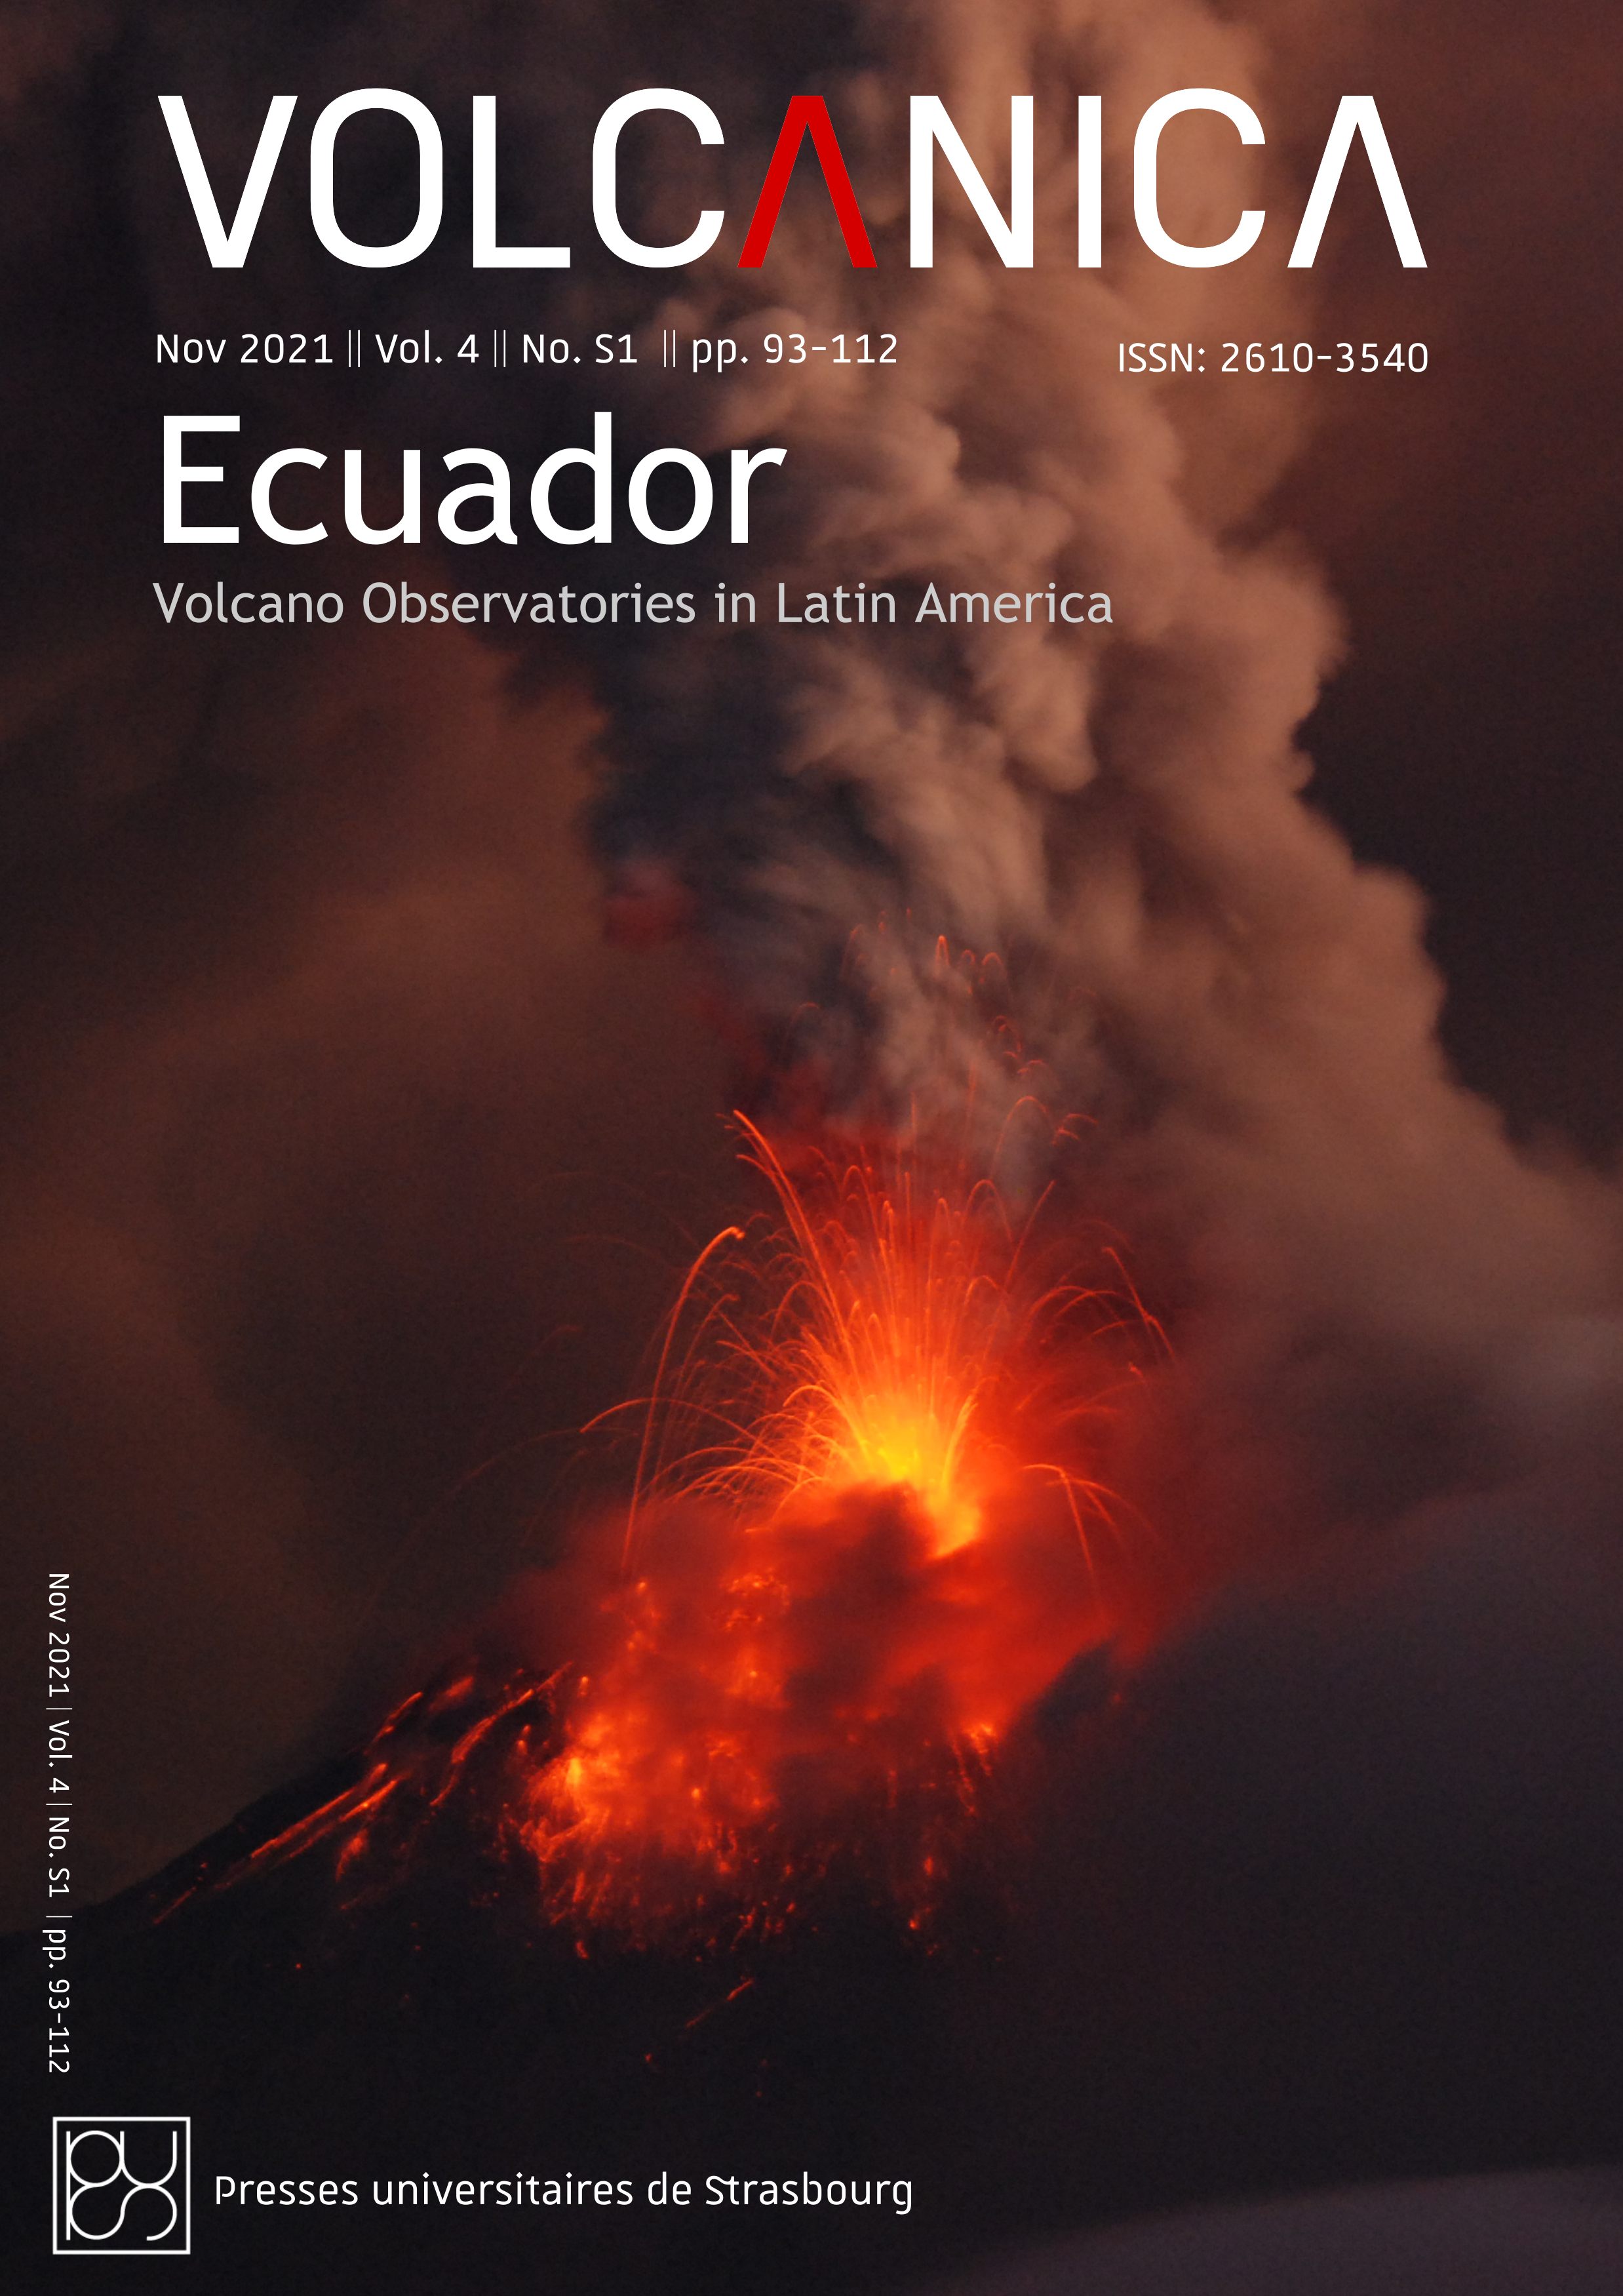 Explosive eruption of Tungurahua volccano, Ecuador. Photo by Silvia Vallejo Vargas